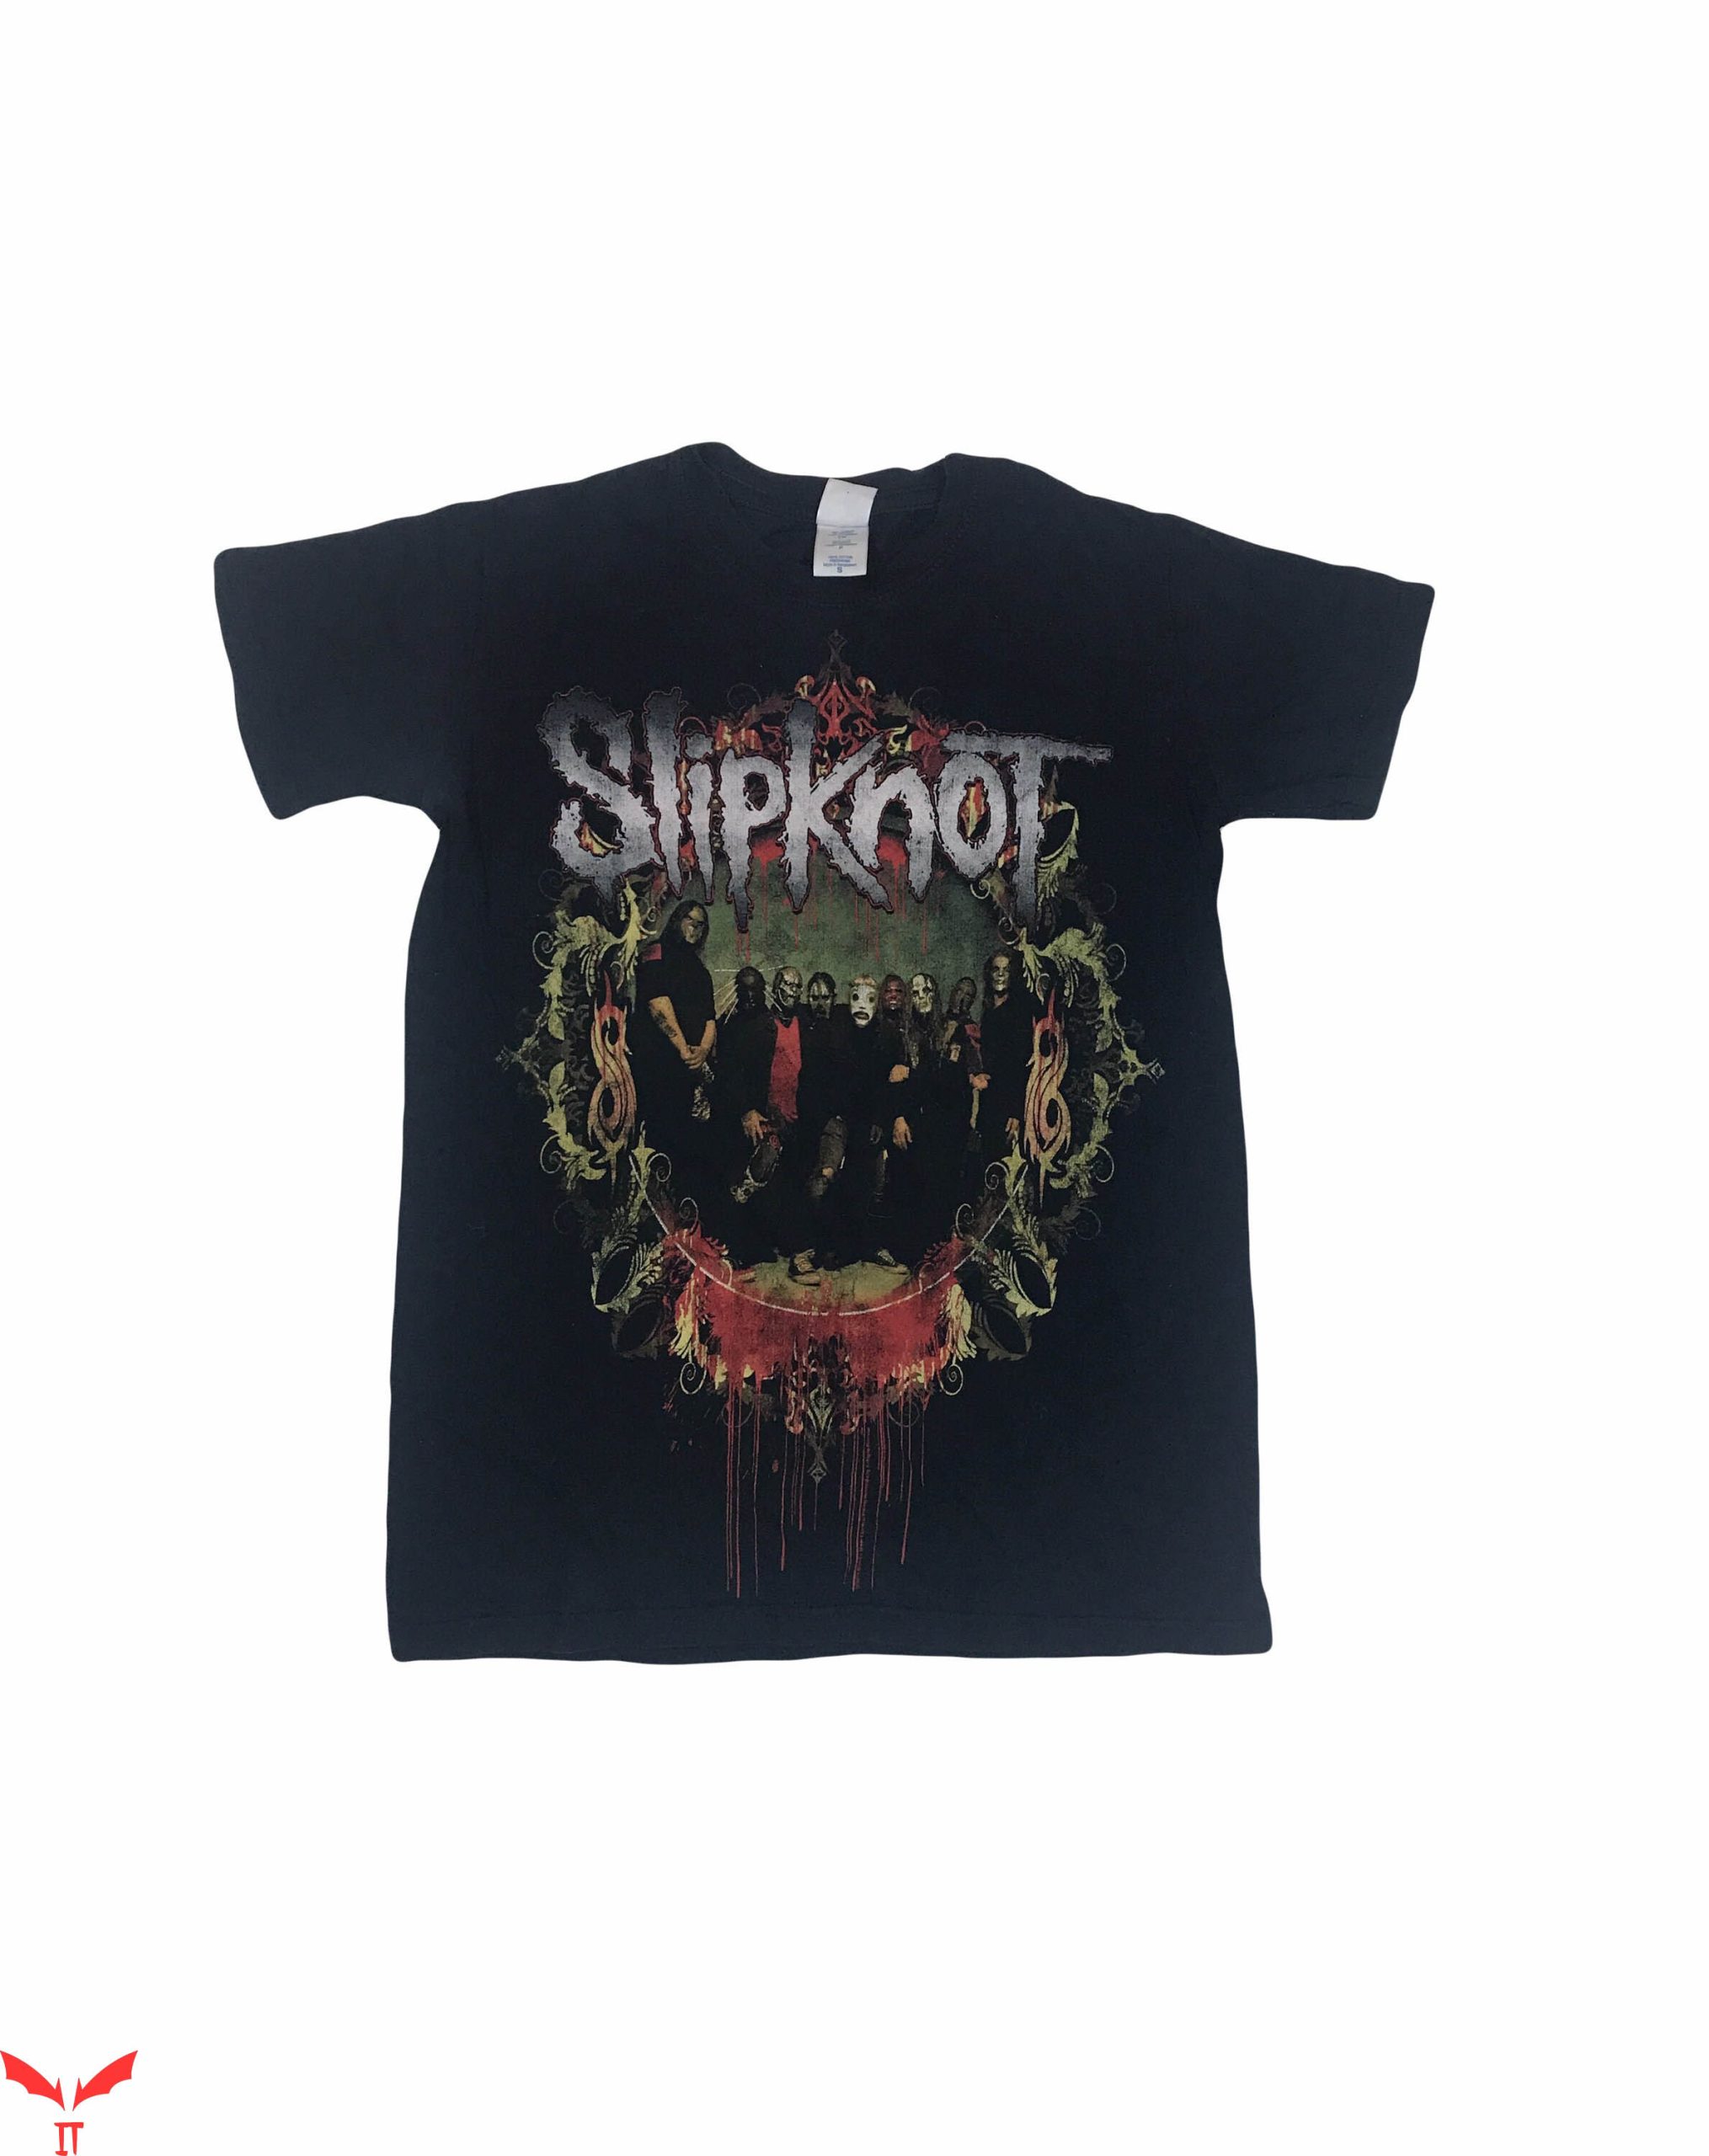 Slipknot Vintage T-Shirt Slipknot Band Heavy Metal Music